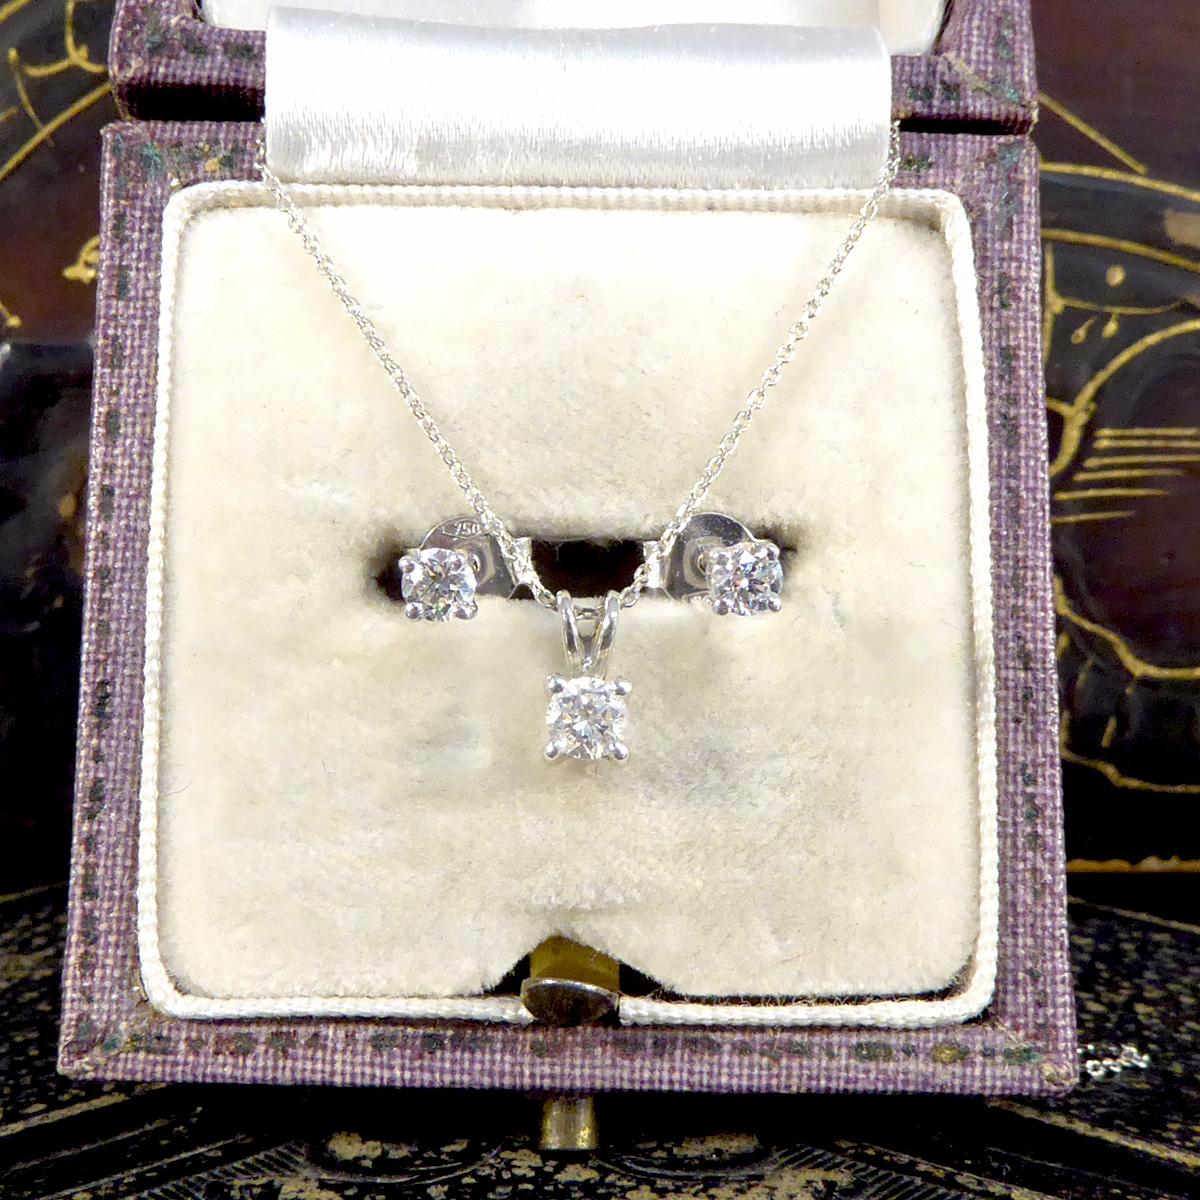 Une paire classique de boucles d'oreilles en diamant et un collier pendentif, le cadeau idéal pour tous ceux qui vous sont chers. Whiting est une paire de boucles d'oreilles composées de diamants d'une valeur totale de 0,25ct, montés sur une monture